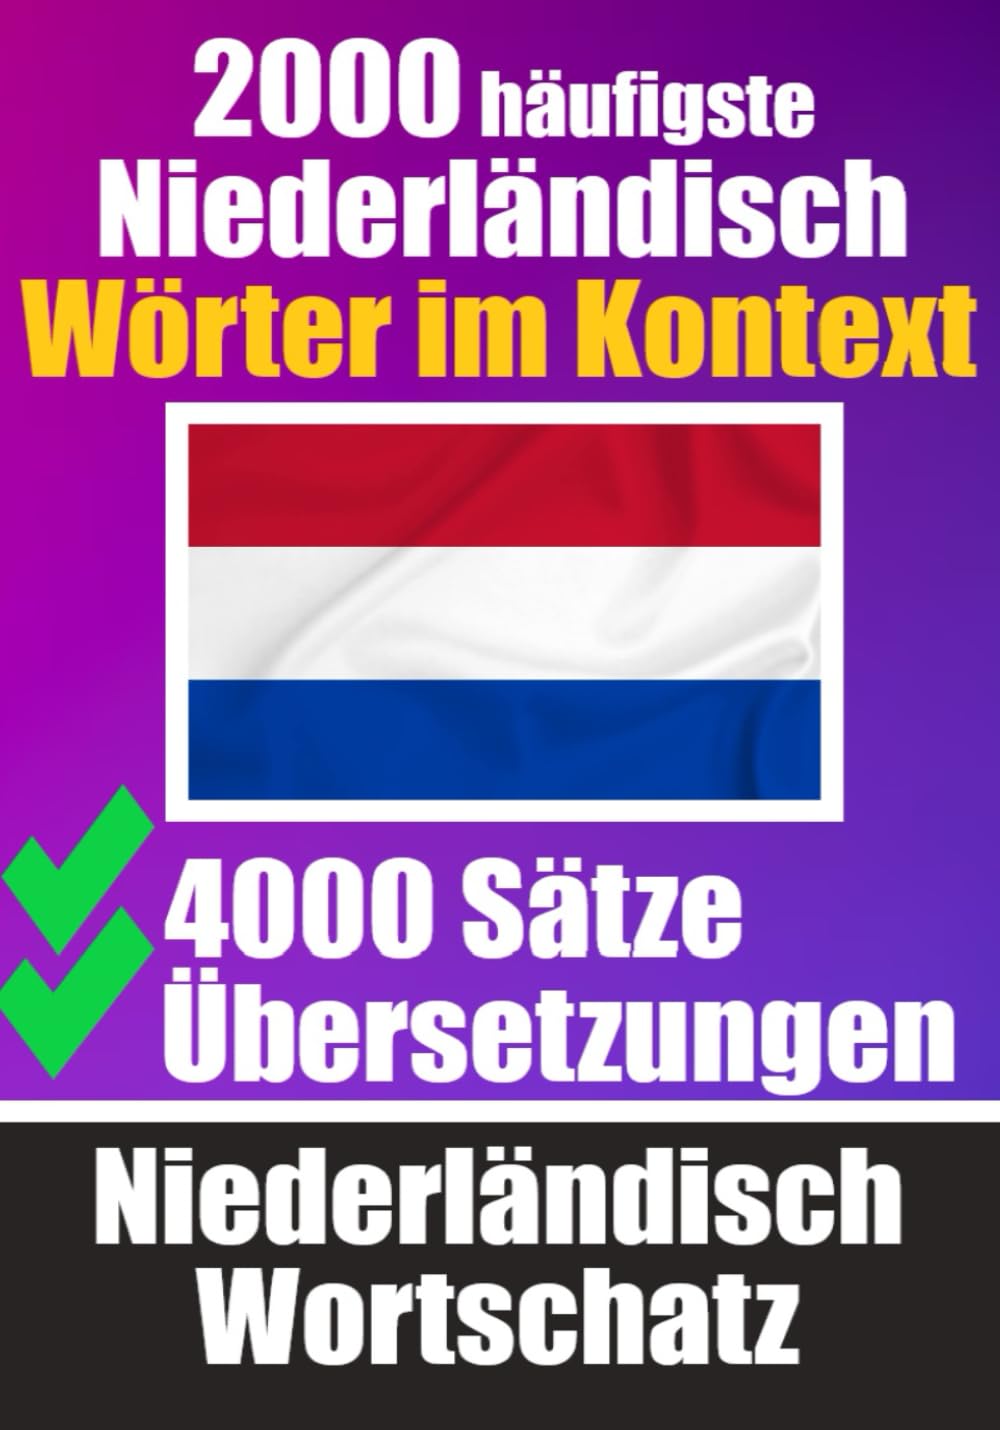 2000 Häufigste Niederländische Wörter im Kontext | 4000 Sätze mit Übersetzung - Skriuwer.com